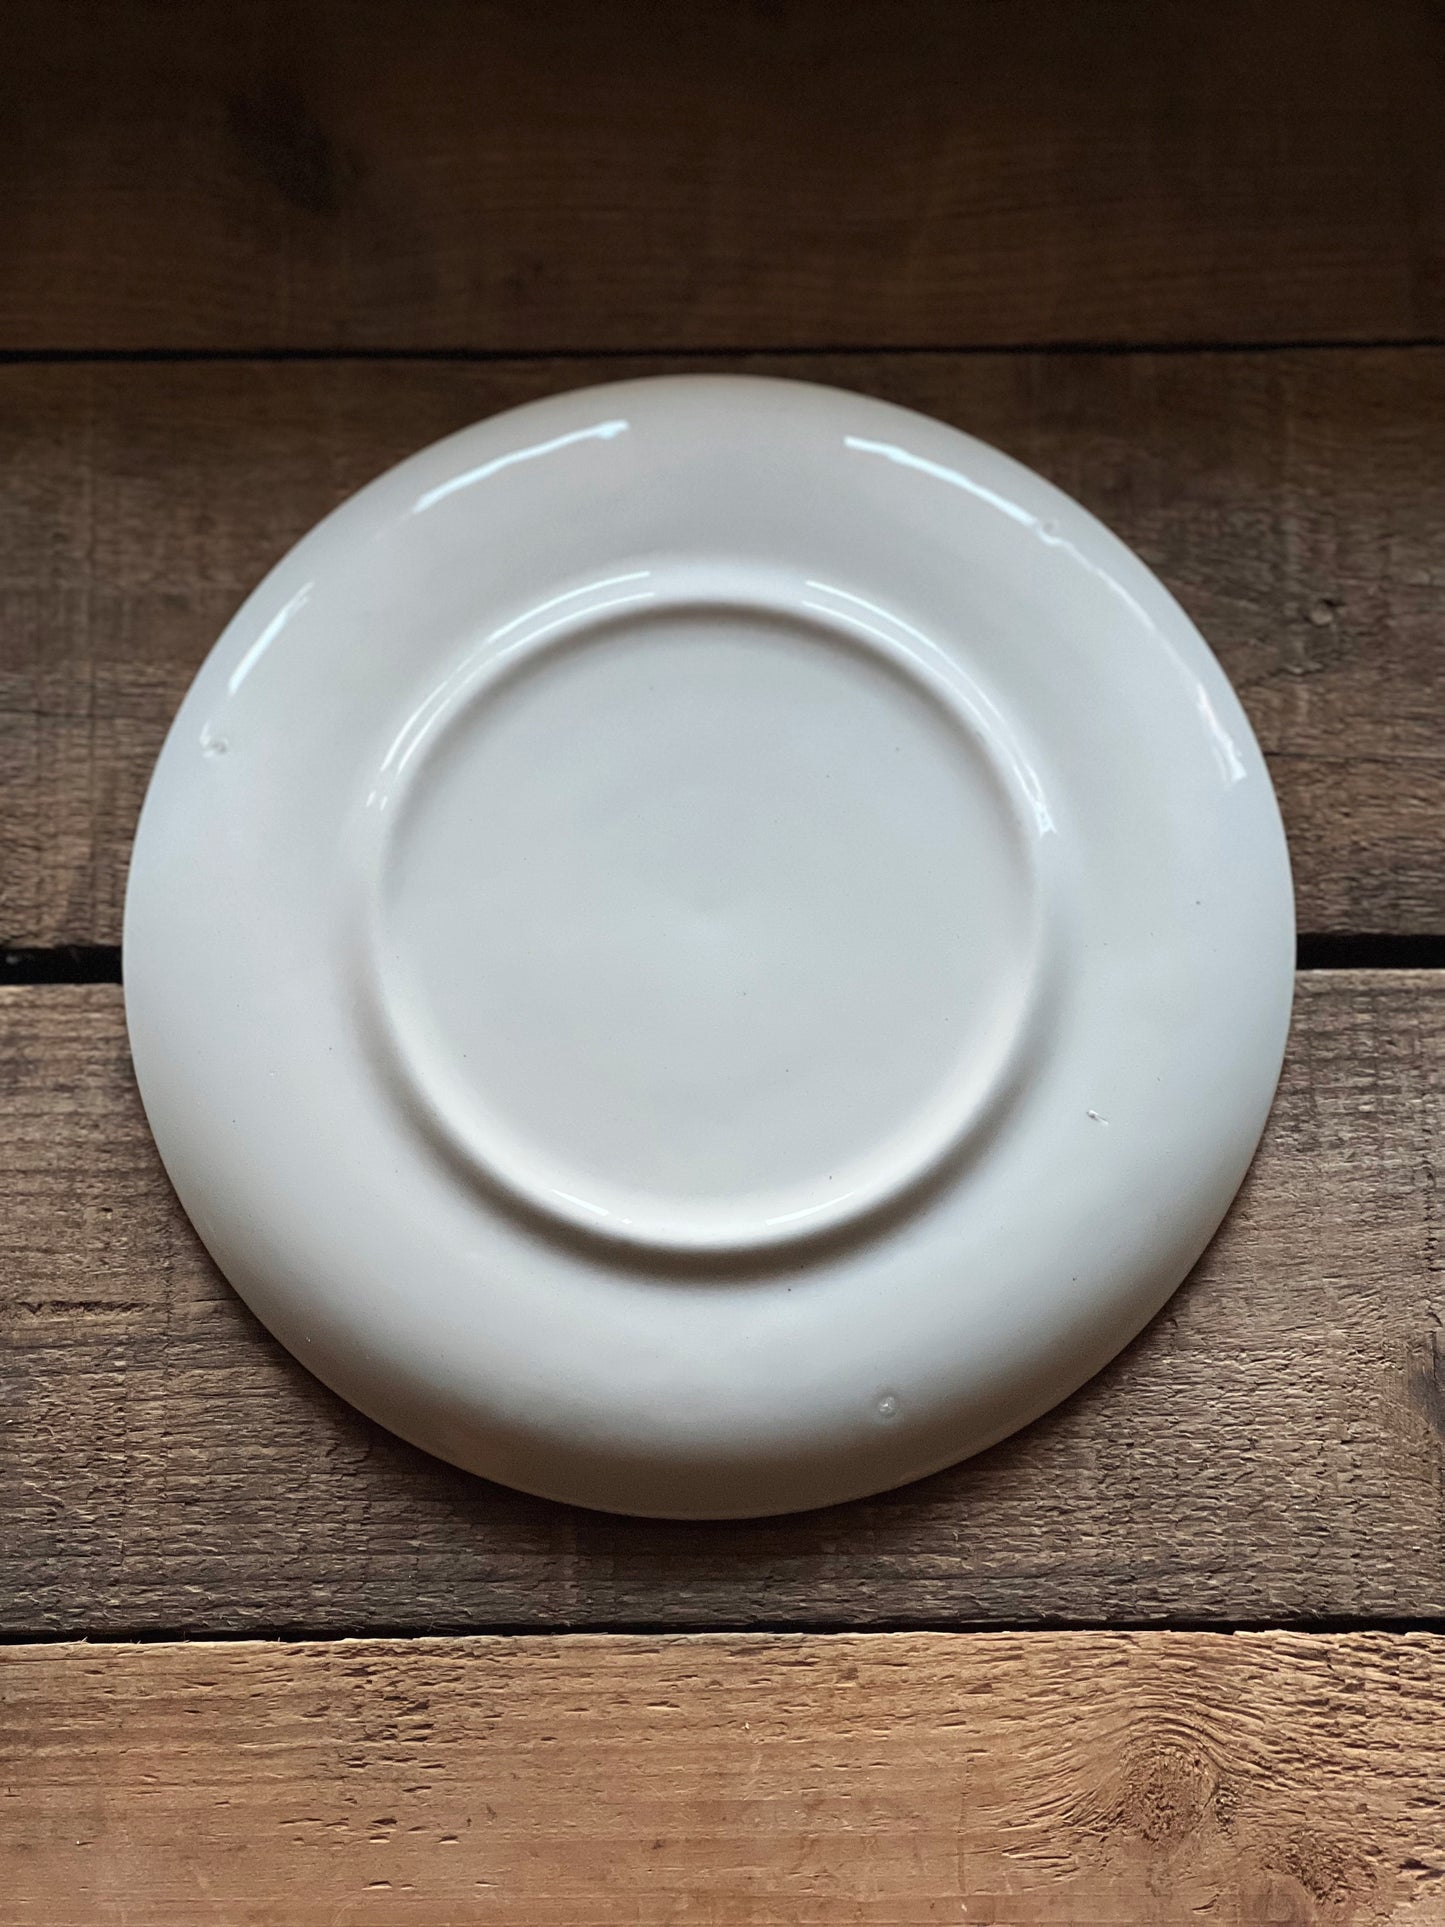 Vintage Dogwood Pattern Salad Plate